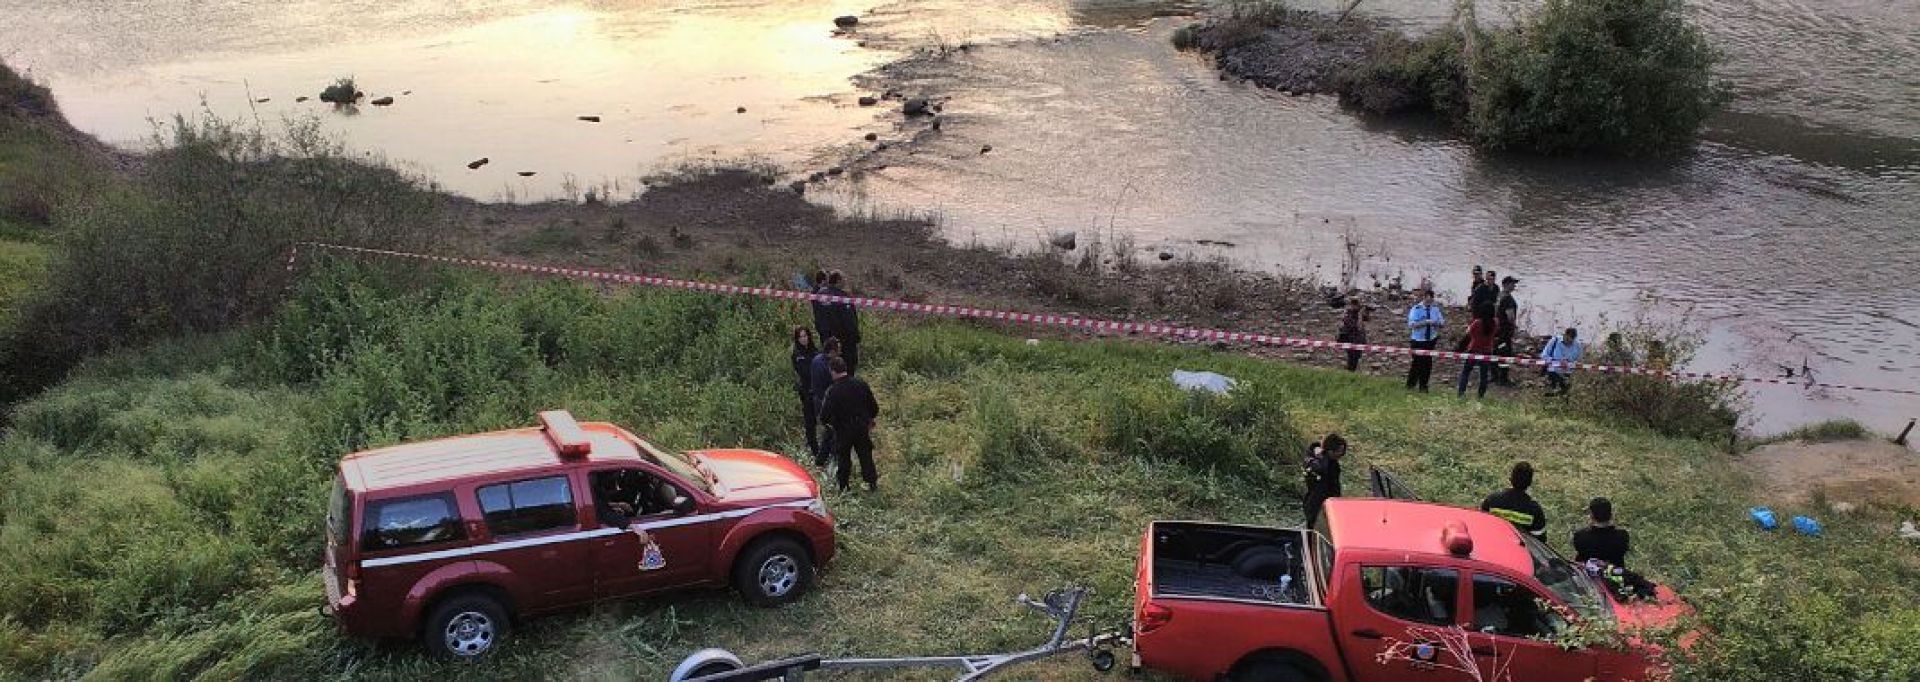 Τραγωδία: Εντοπίστηκε το αυτοκίνητο της αγνοούμενης οικογένειας στην Κρήτη – Βρέθηκαν 4 σοροί (φωτό, βίντεο) (upd)